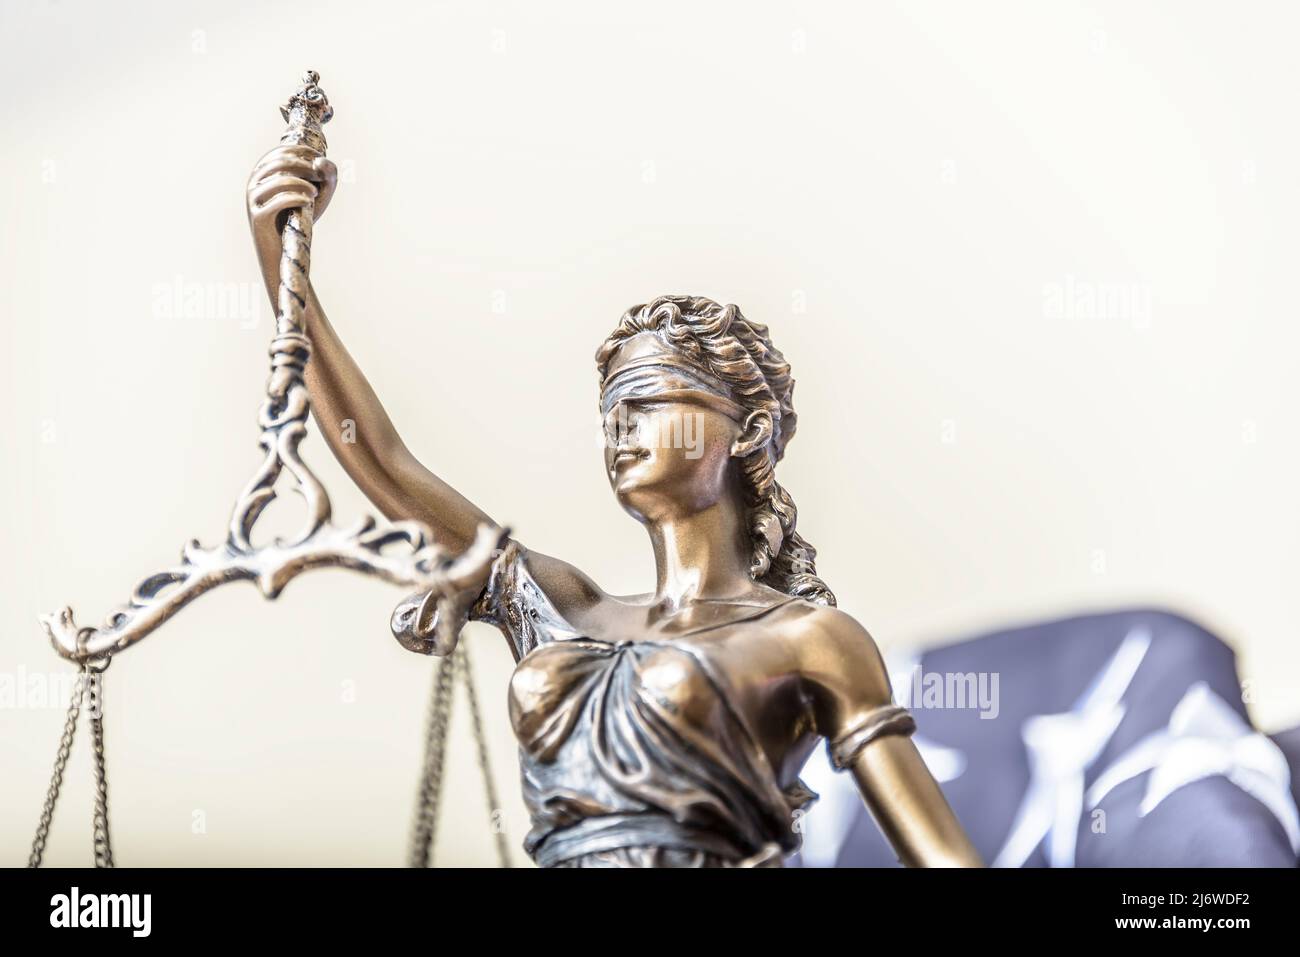 La statua di giustizia Themis o Iustitia, la dea della giustizia bendata contro una bandiera degli Stati Uniti d'America, come un concetto legale. Foto Stock